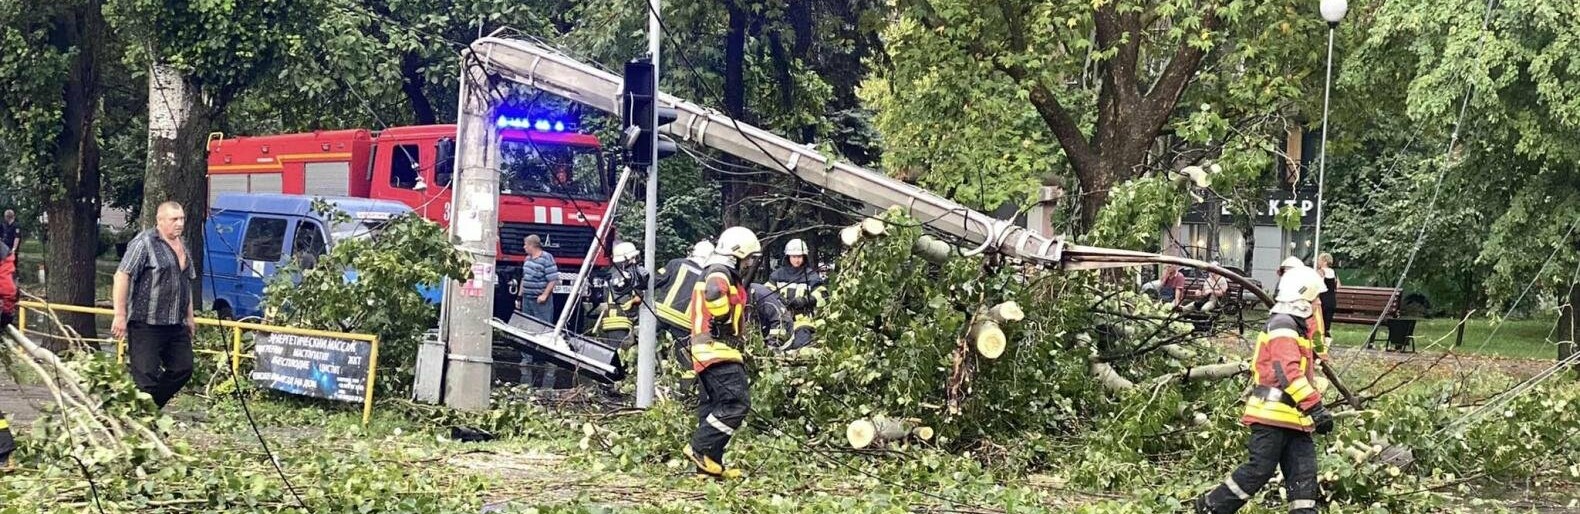 В Запоріжжі через негоду впало дерево та електроопора, заблокувавши рух транспорту, - ФОТО